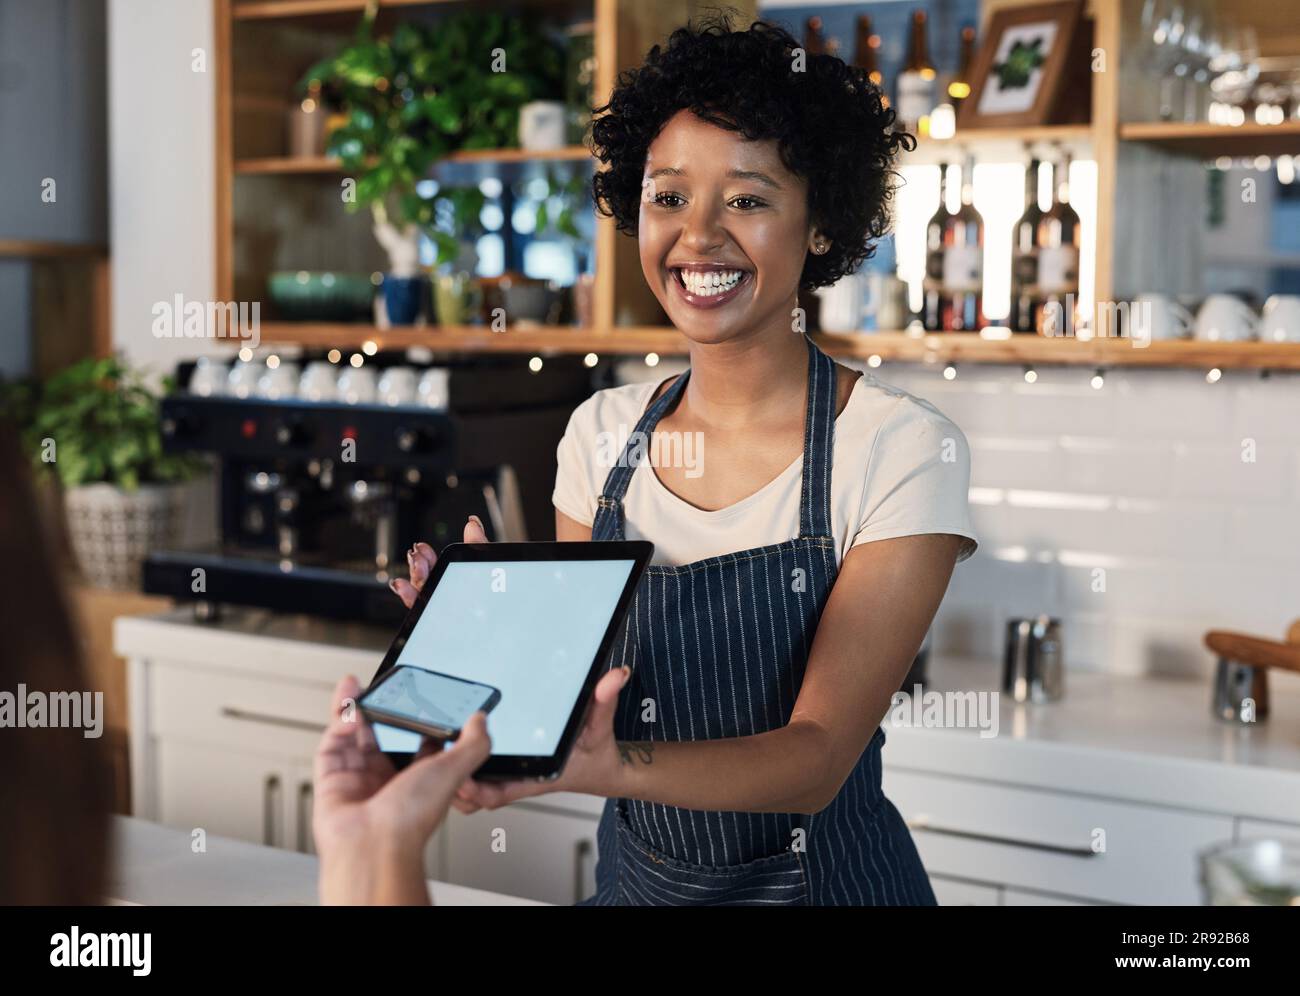 Glückliche Frau, Tablet und Mockup-Bildschirm für Bezahlung, E-Commerce oder elektronische Einkäufe im Café. Weibliche Kellnerin und Kundin mit Technologie Stockfoto